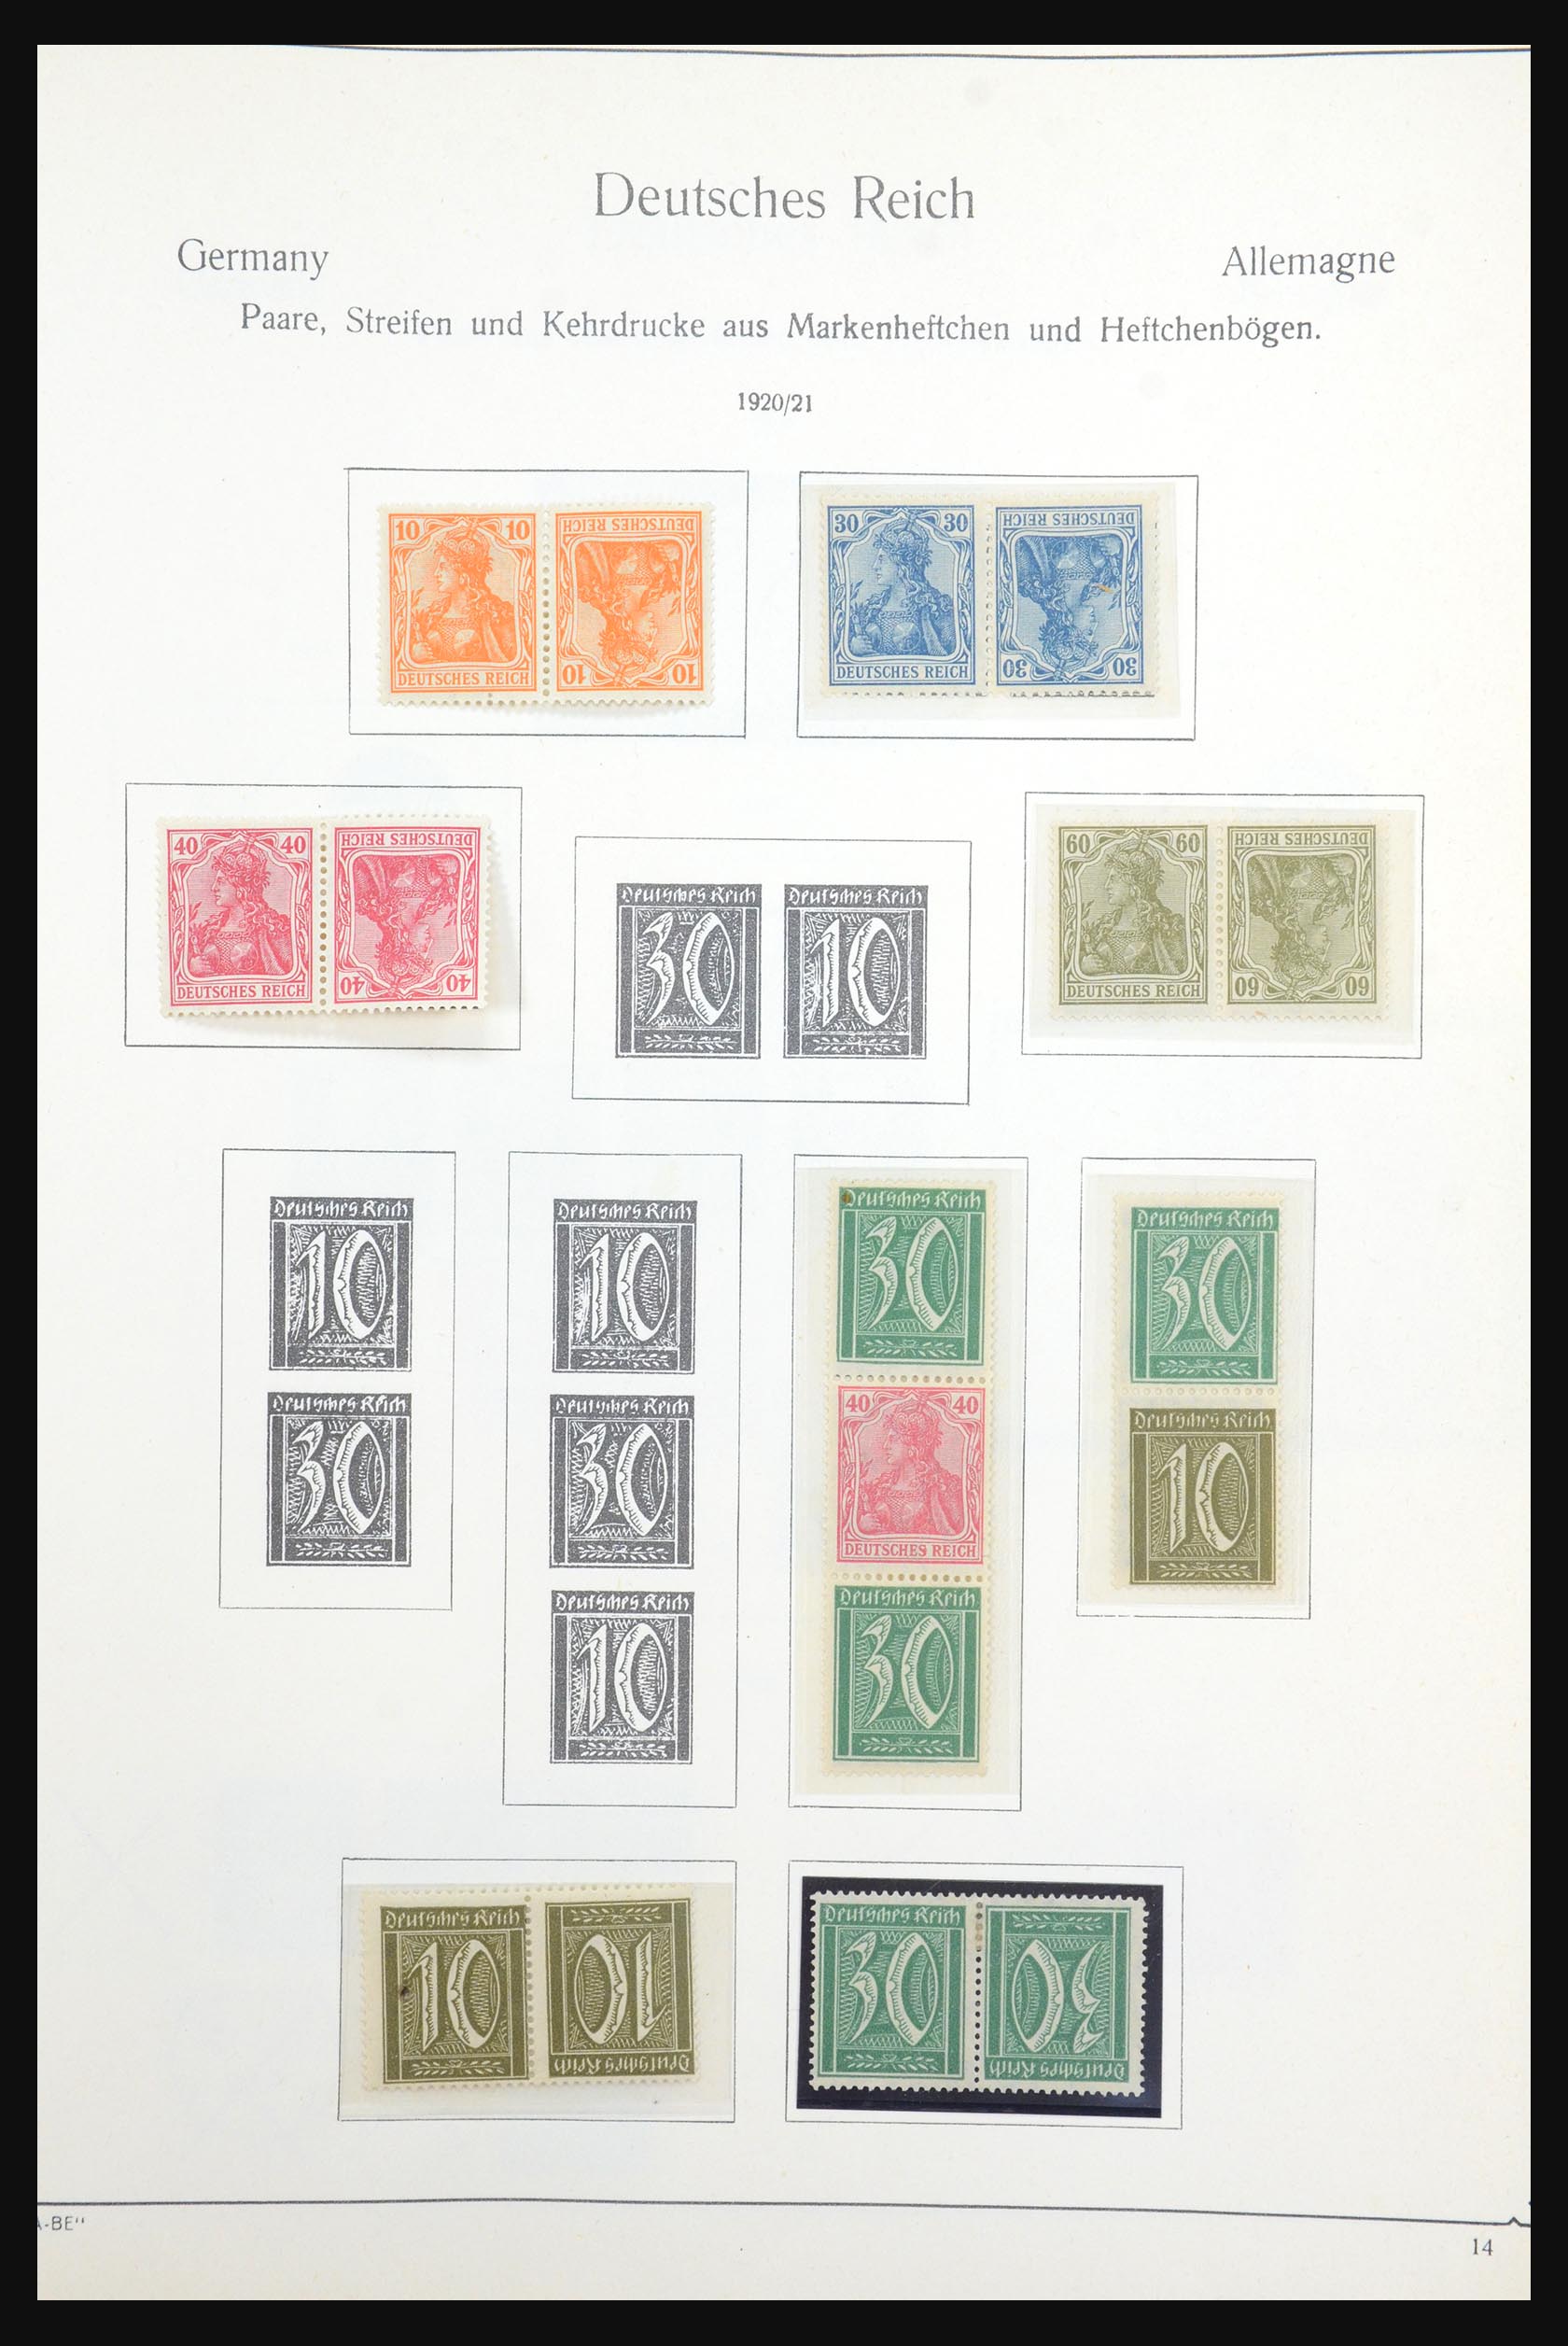 31566 007 - 31566 Duitsland combinaties 1909-1960.